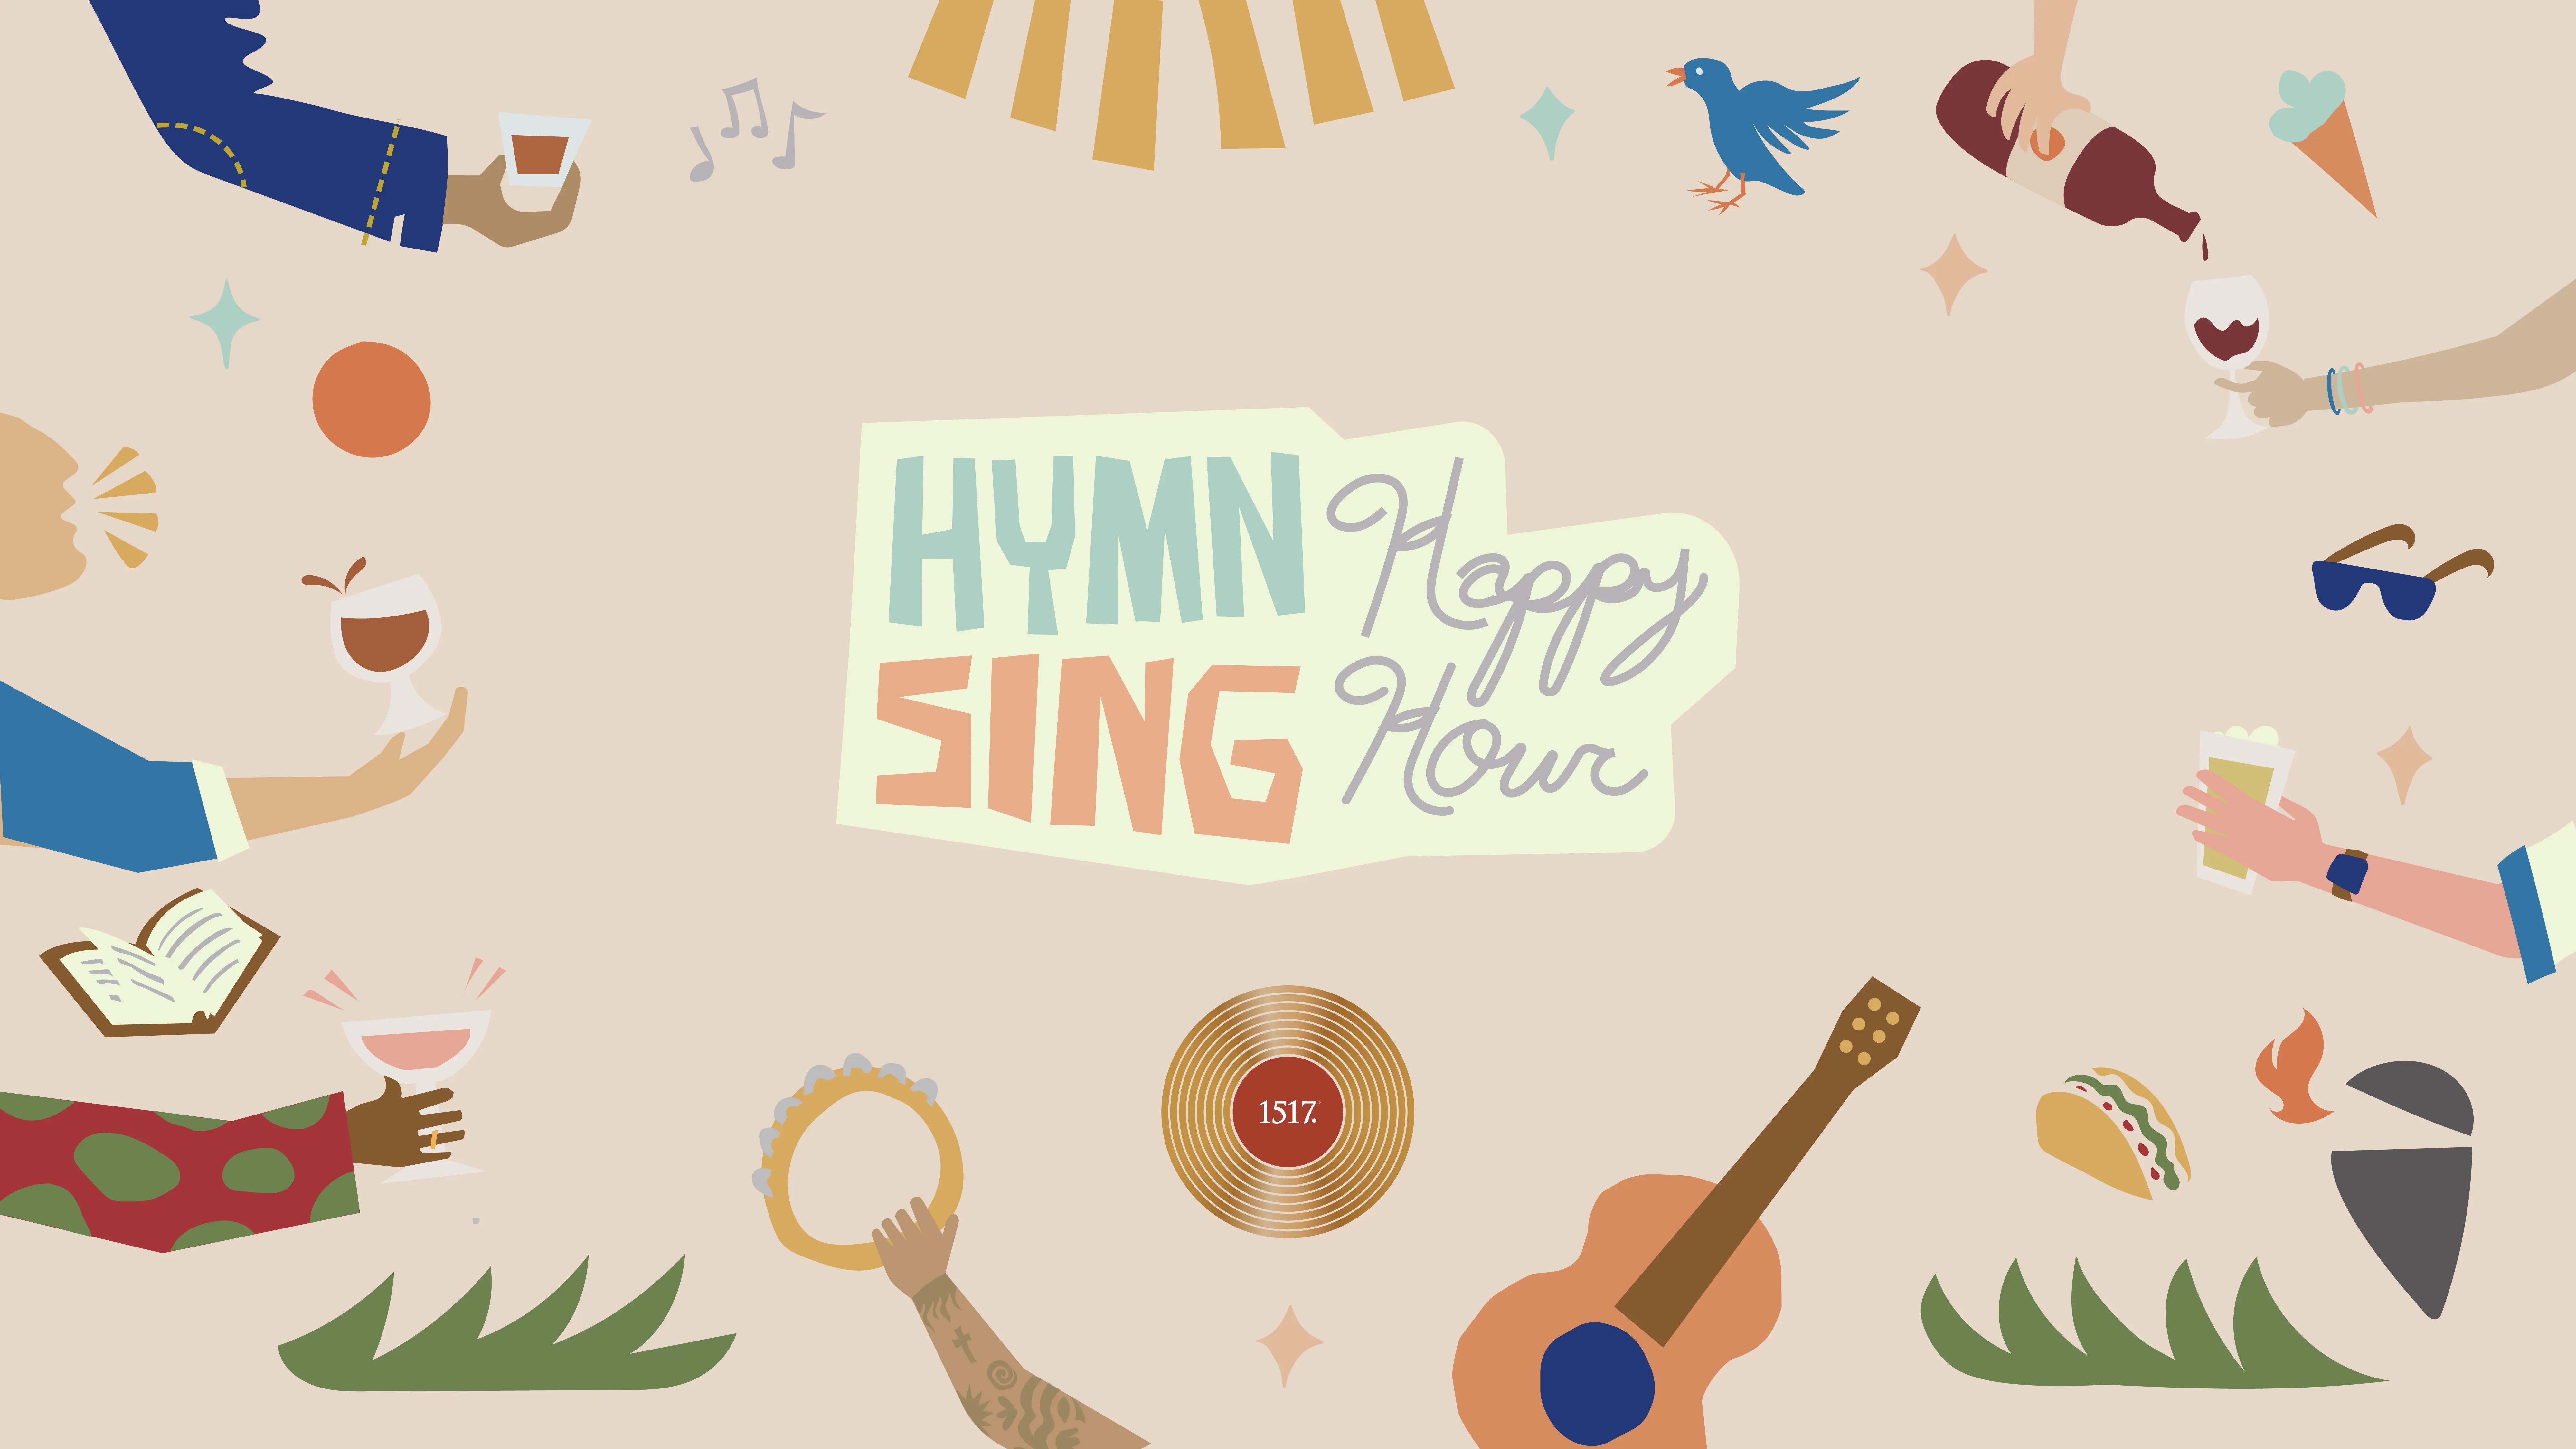 Hymn Sing Happy Hour